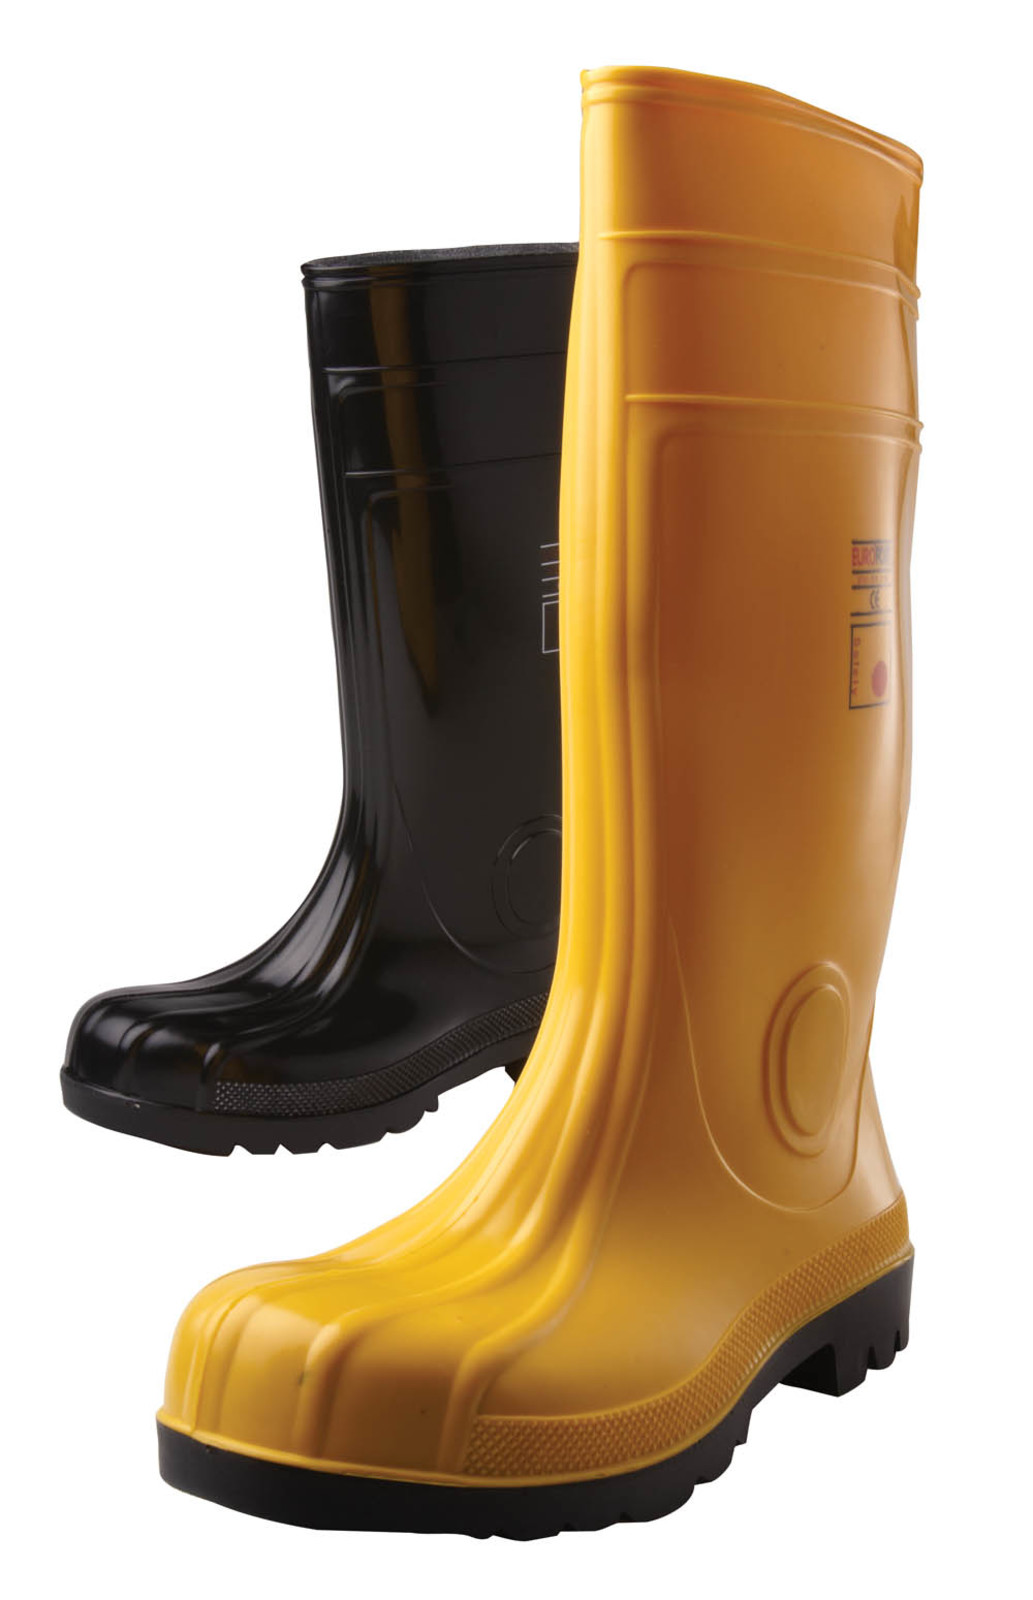 Gumáky Boots Eurofort  S5 - veľkosť: 46, farba: žltá